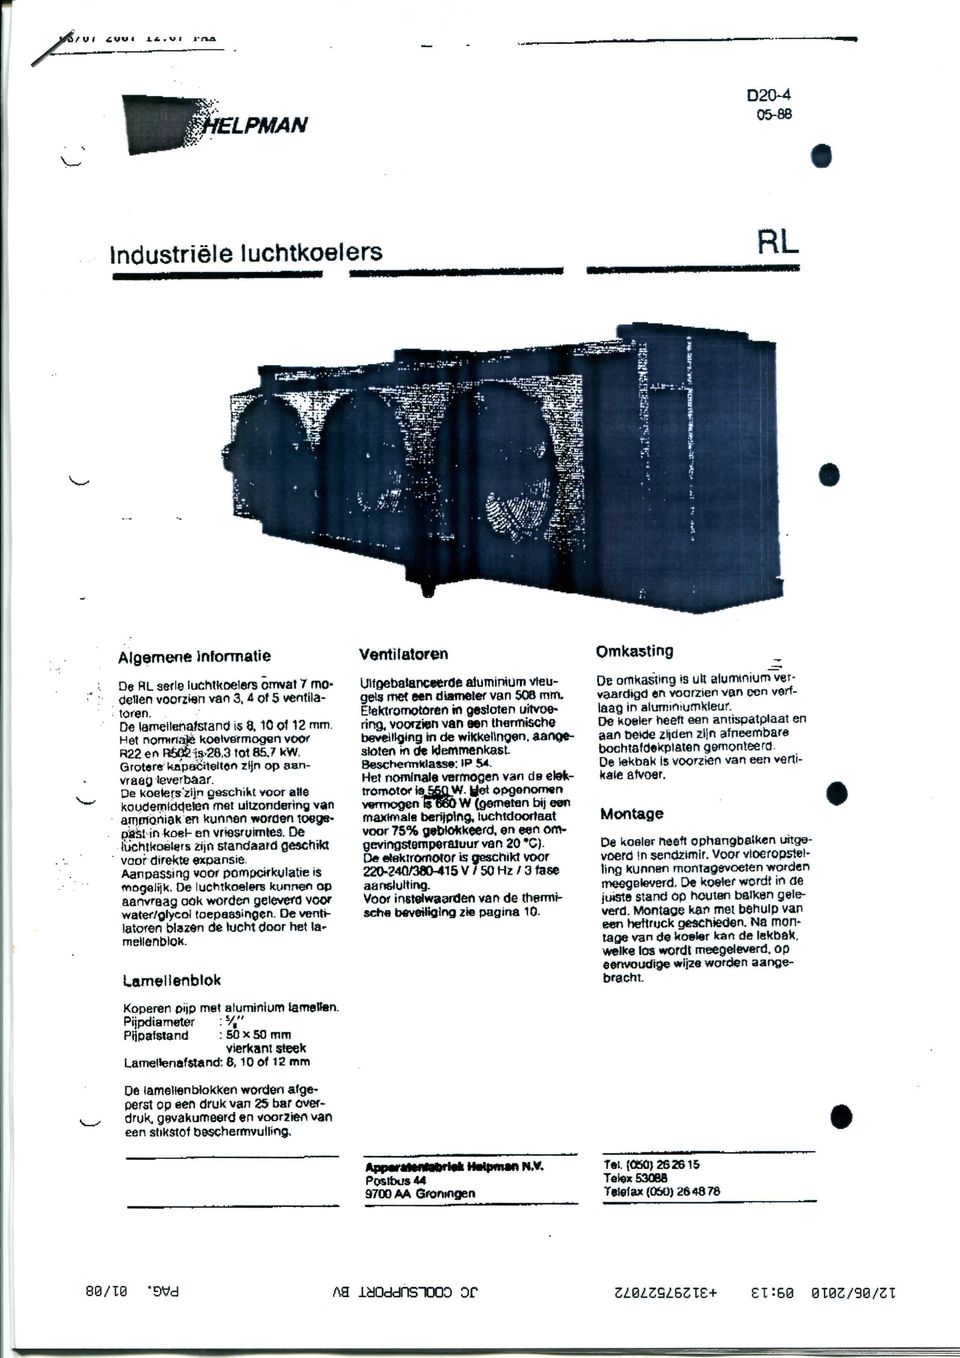 De koelers'zijn geschikt voor alle kckidemiddcfón met uitzondering van arnmoniak «n kunnen worden toegepast in koel- en vnosr uimles.